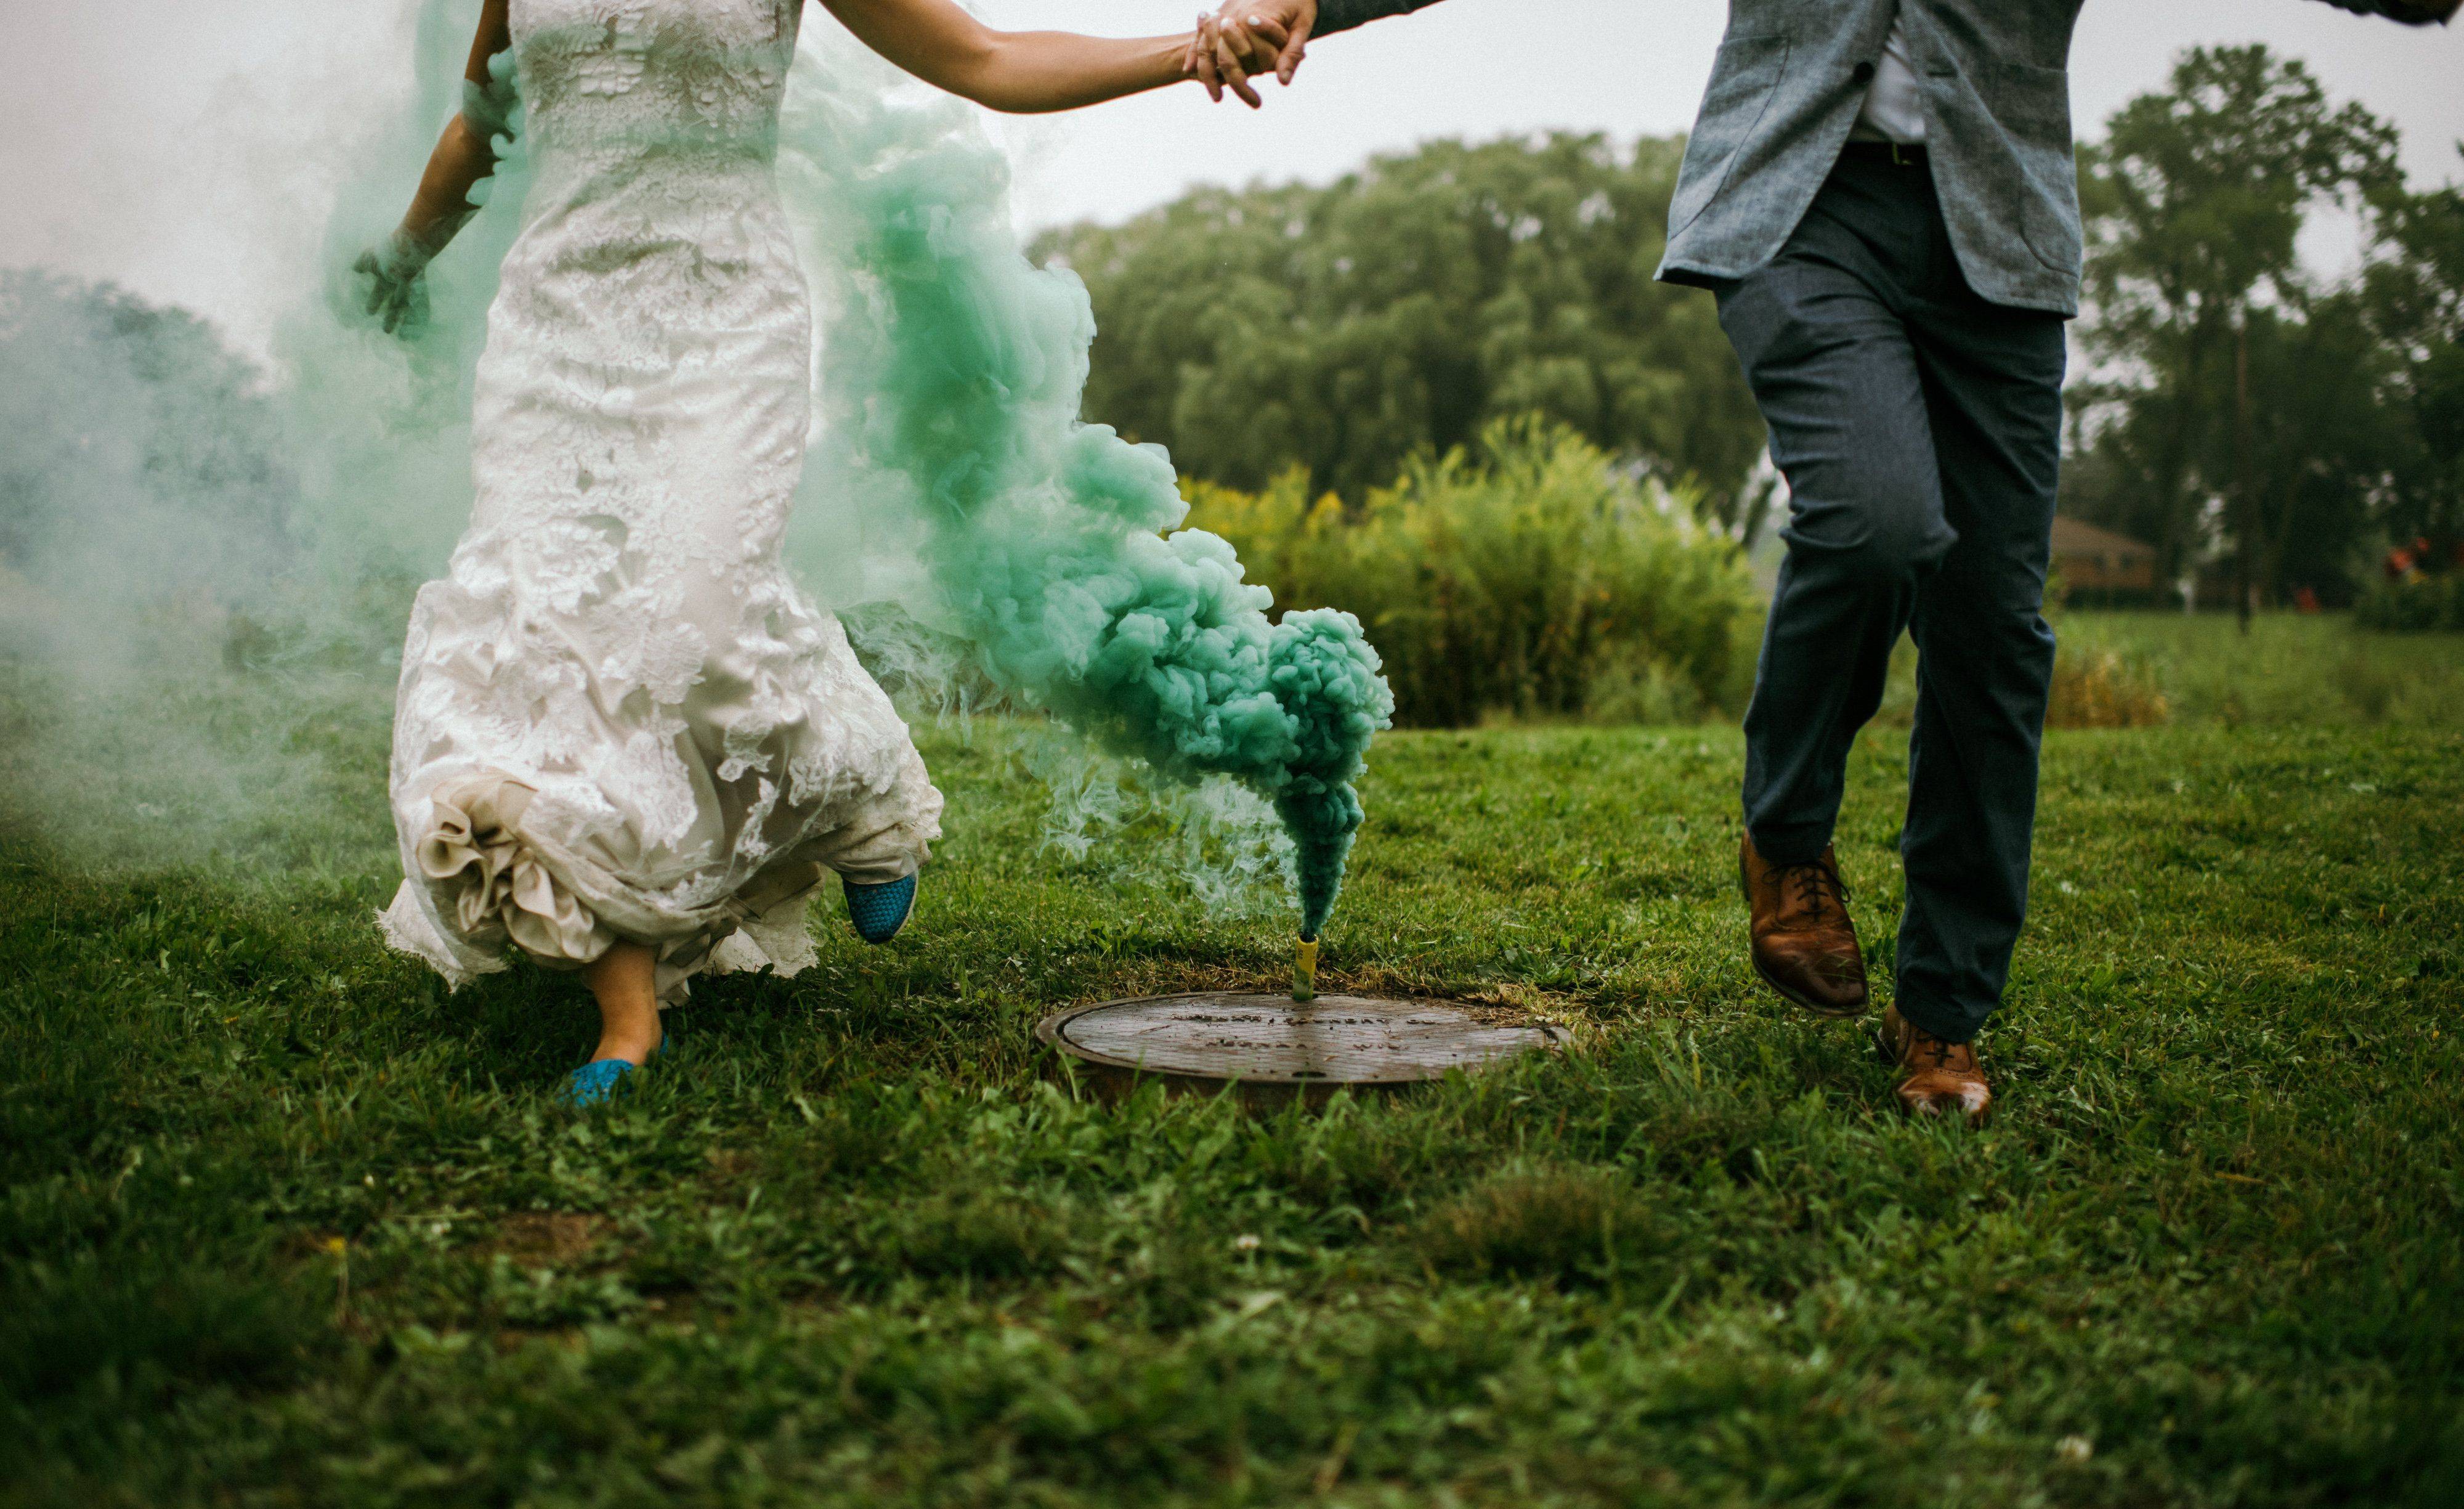 Цветной дым для свадебной фотосессии (идеи и фото)